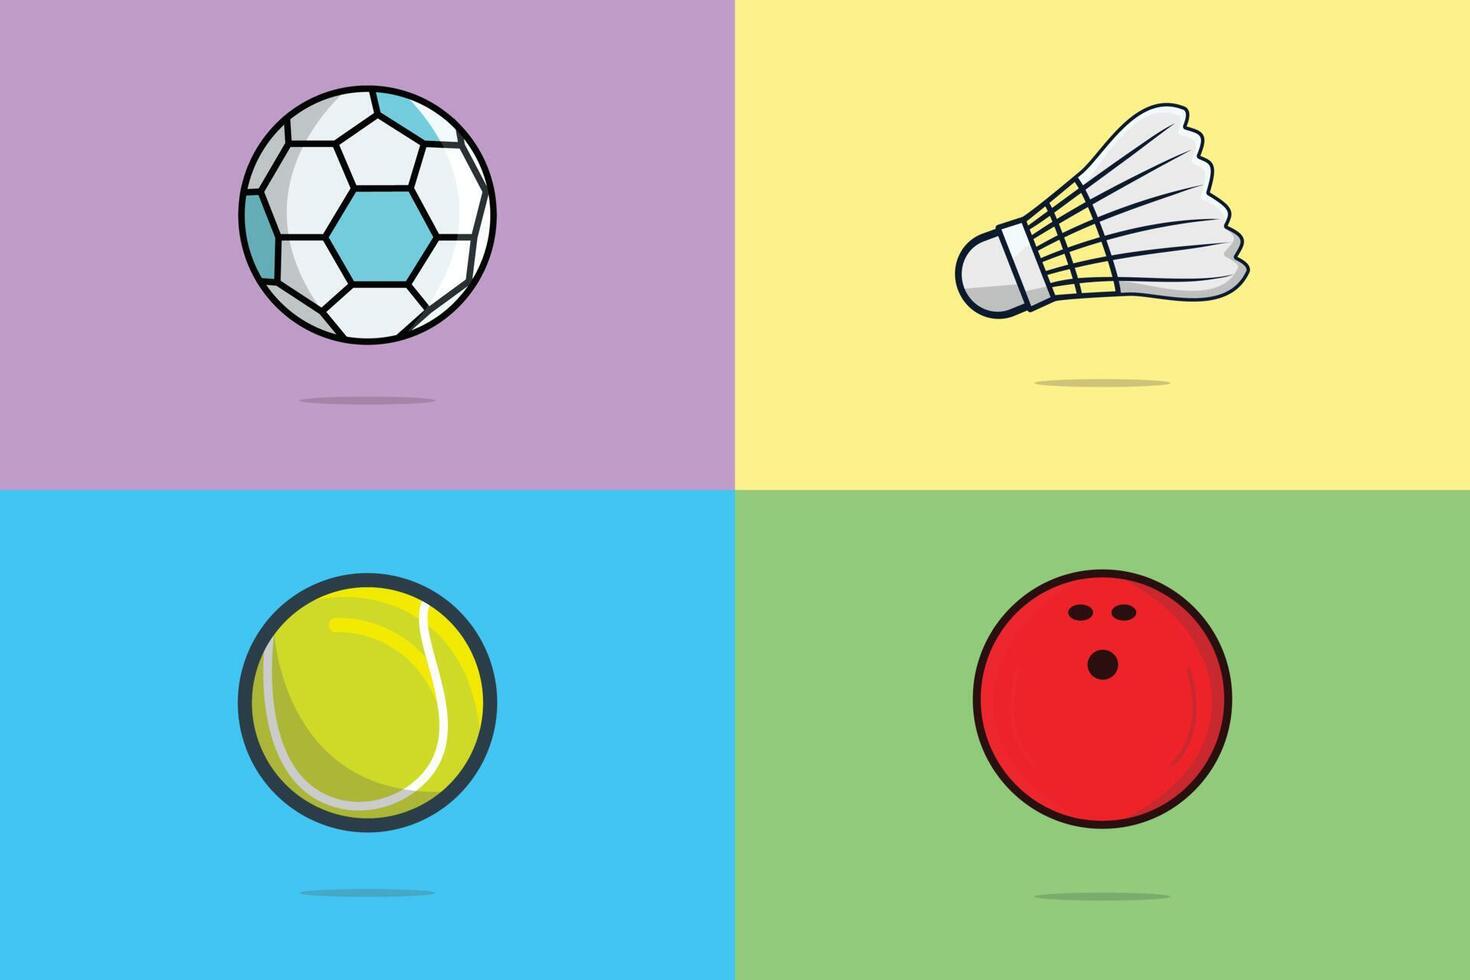 runde ball sportspielsammlung vektorillustration. Sport-Objekte-Element-Icon-Konzept. Fußball, Tennisball, Badminton und Bowlingkugel-Vektordesign. sammlung von sportikonenelementen. vektor